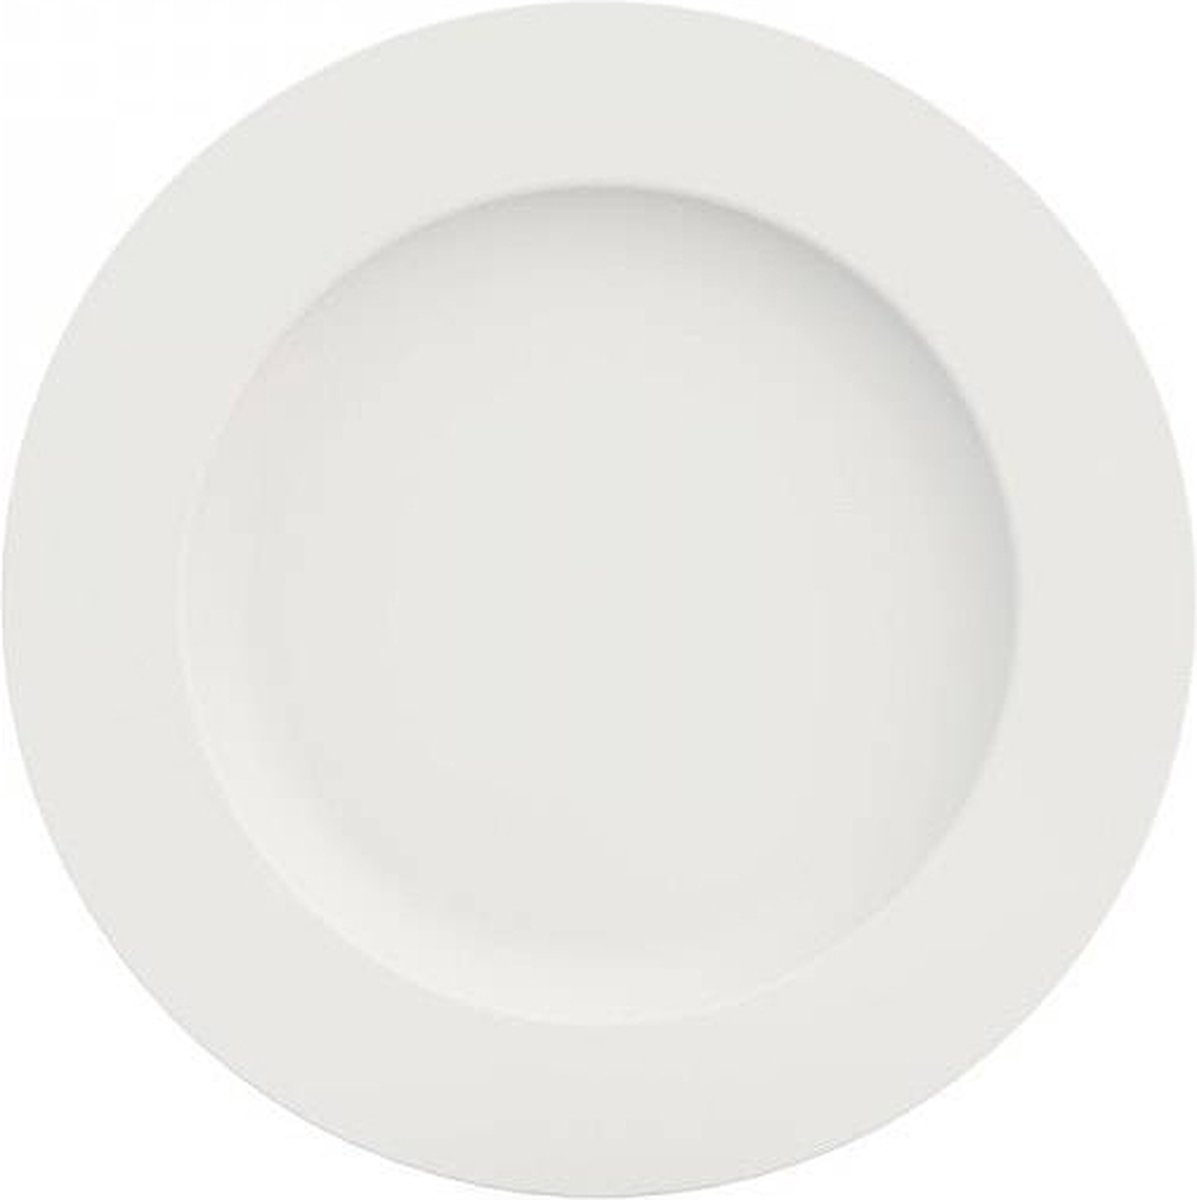 Klassiek onbreekbare melamine borden: 24 cm diep bord 42 mm